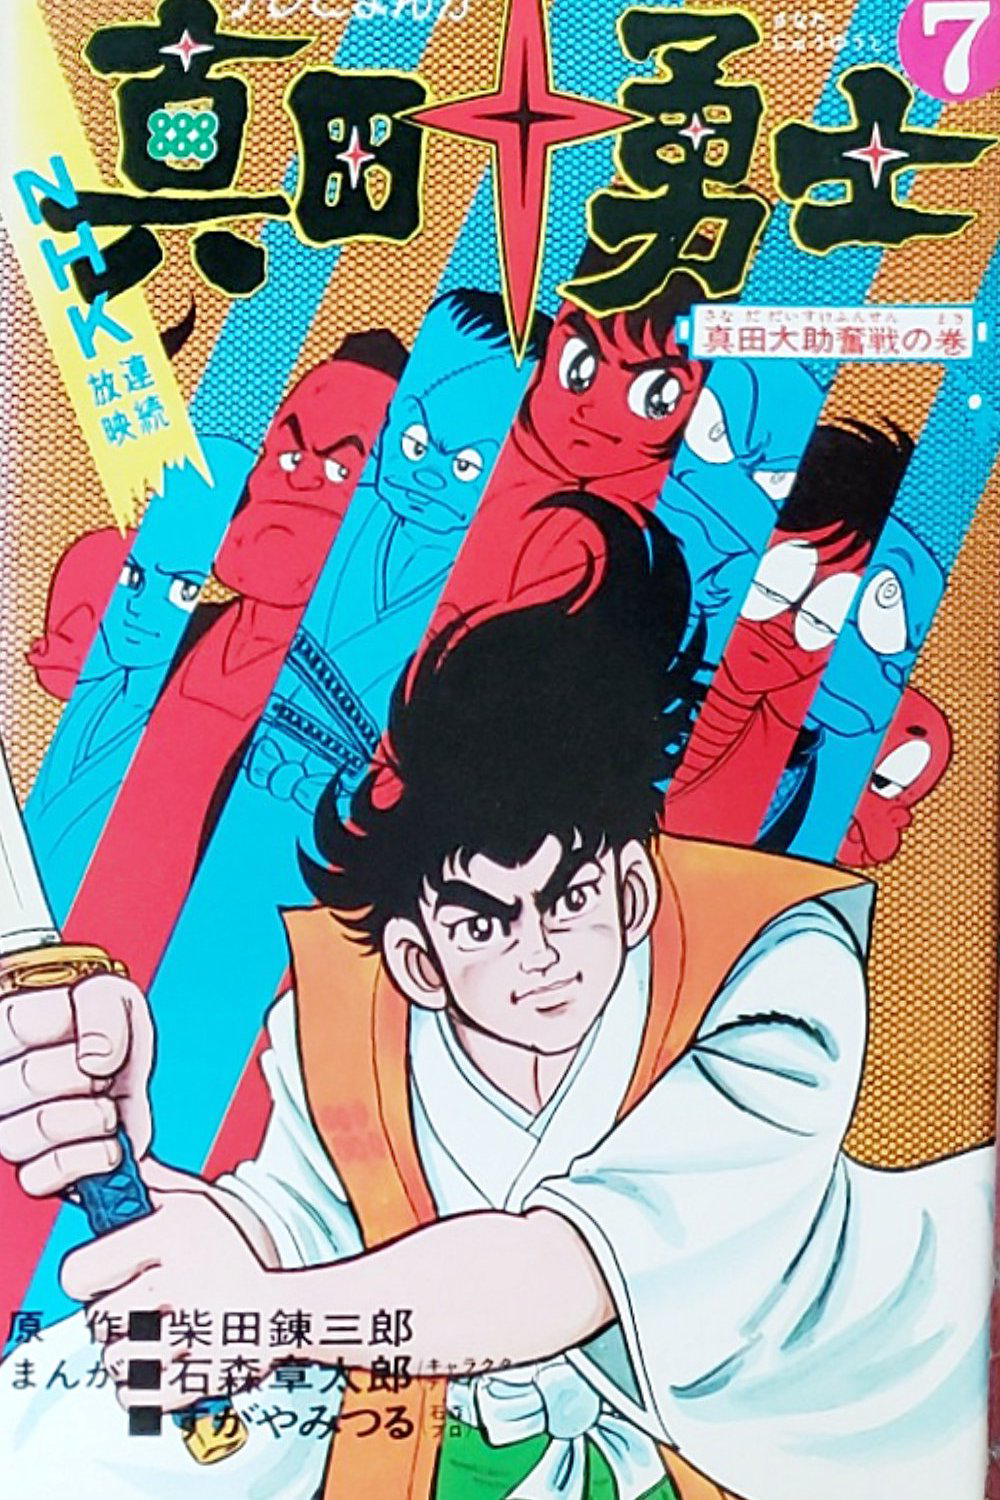 The Ten Heroes of Sanada cover 1